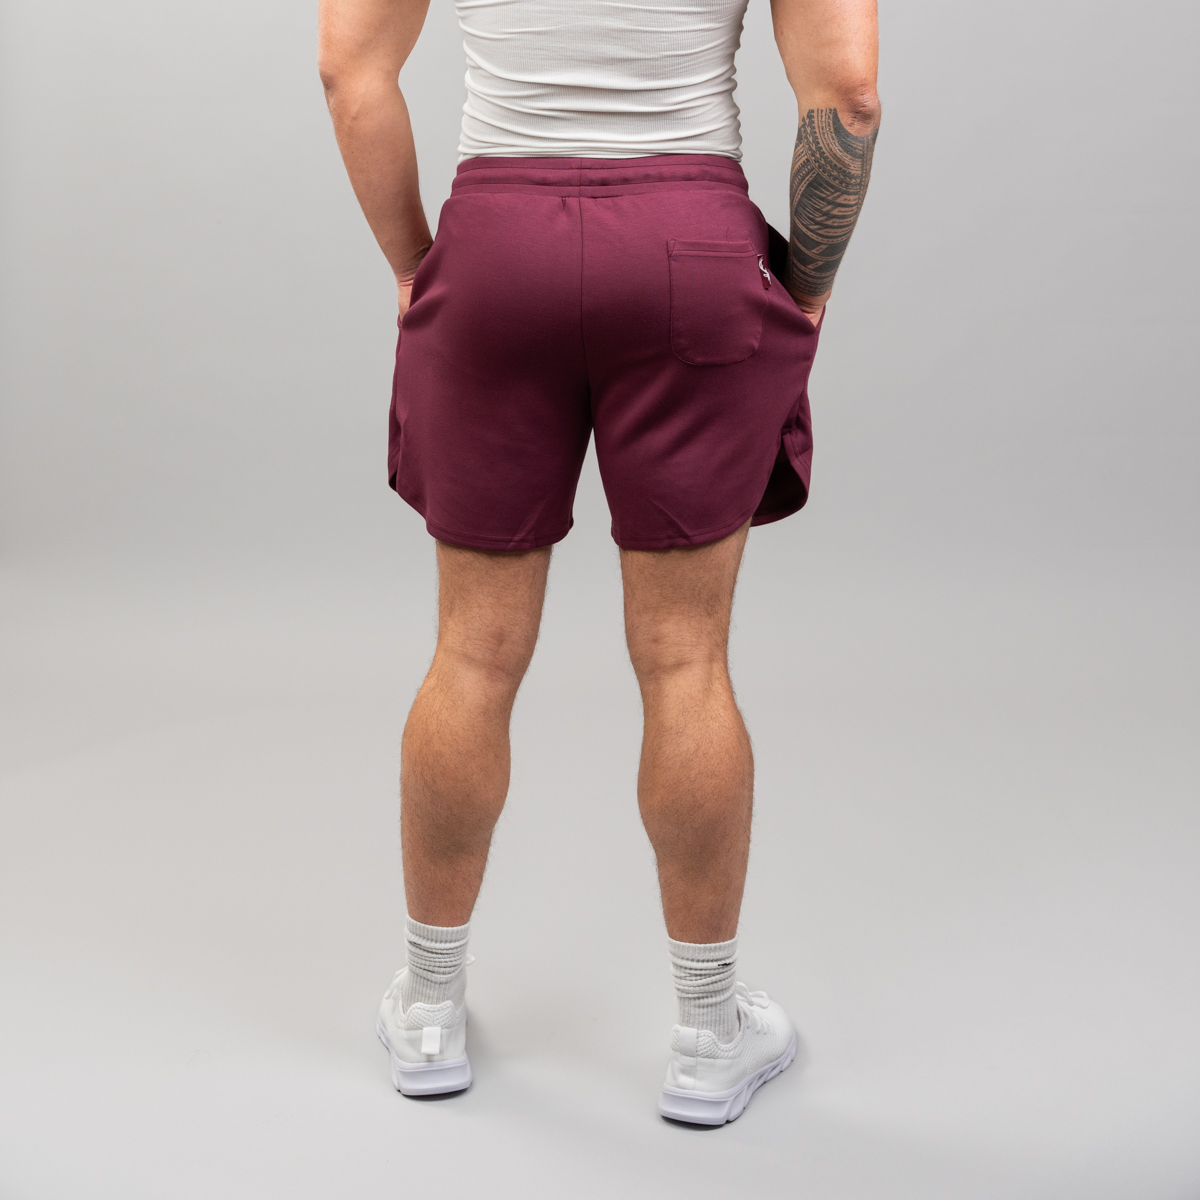 $39.99 Training Shorts  Training shorts, Mens workout shorts, Knee sleeves